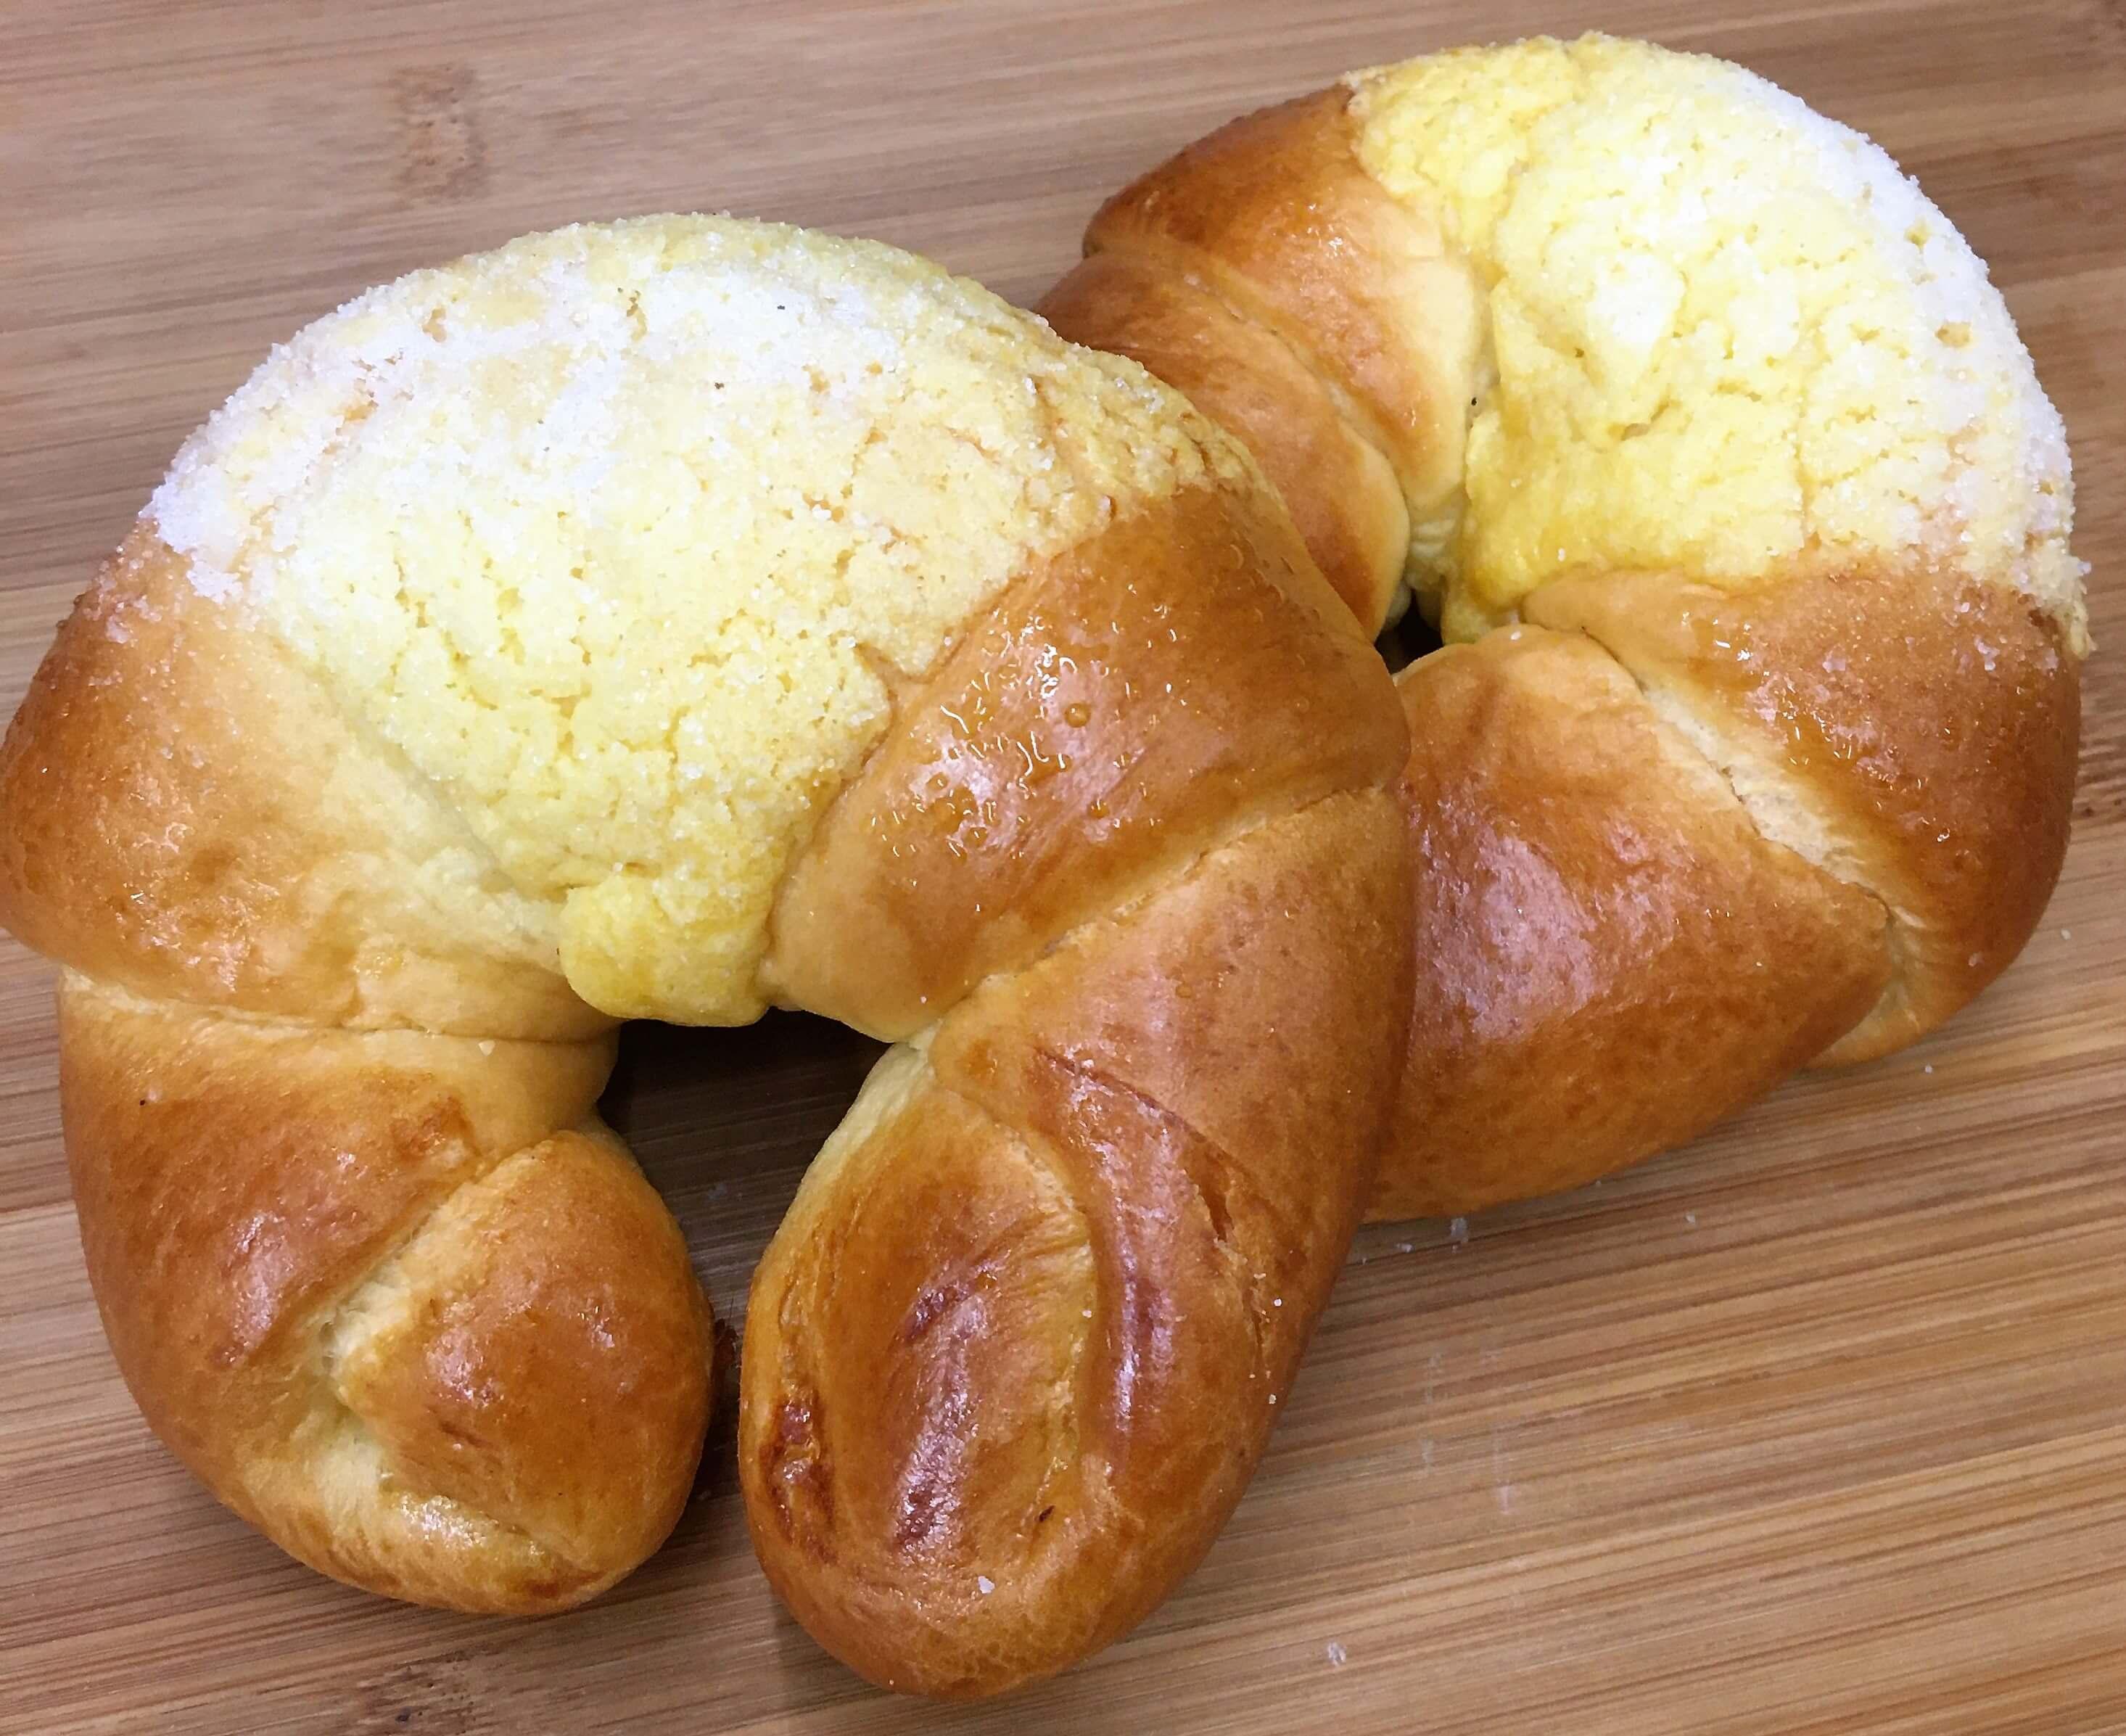 Moroleon Bakery - Sweet Horn Bread